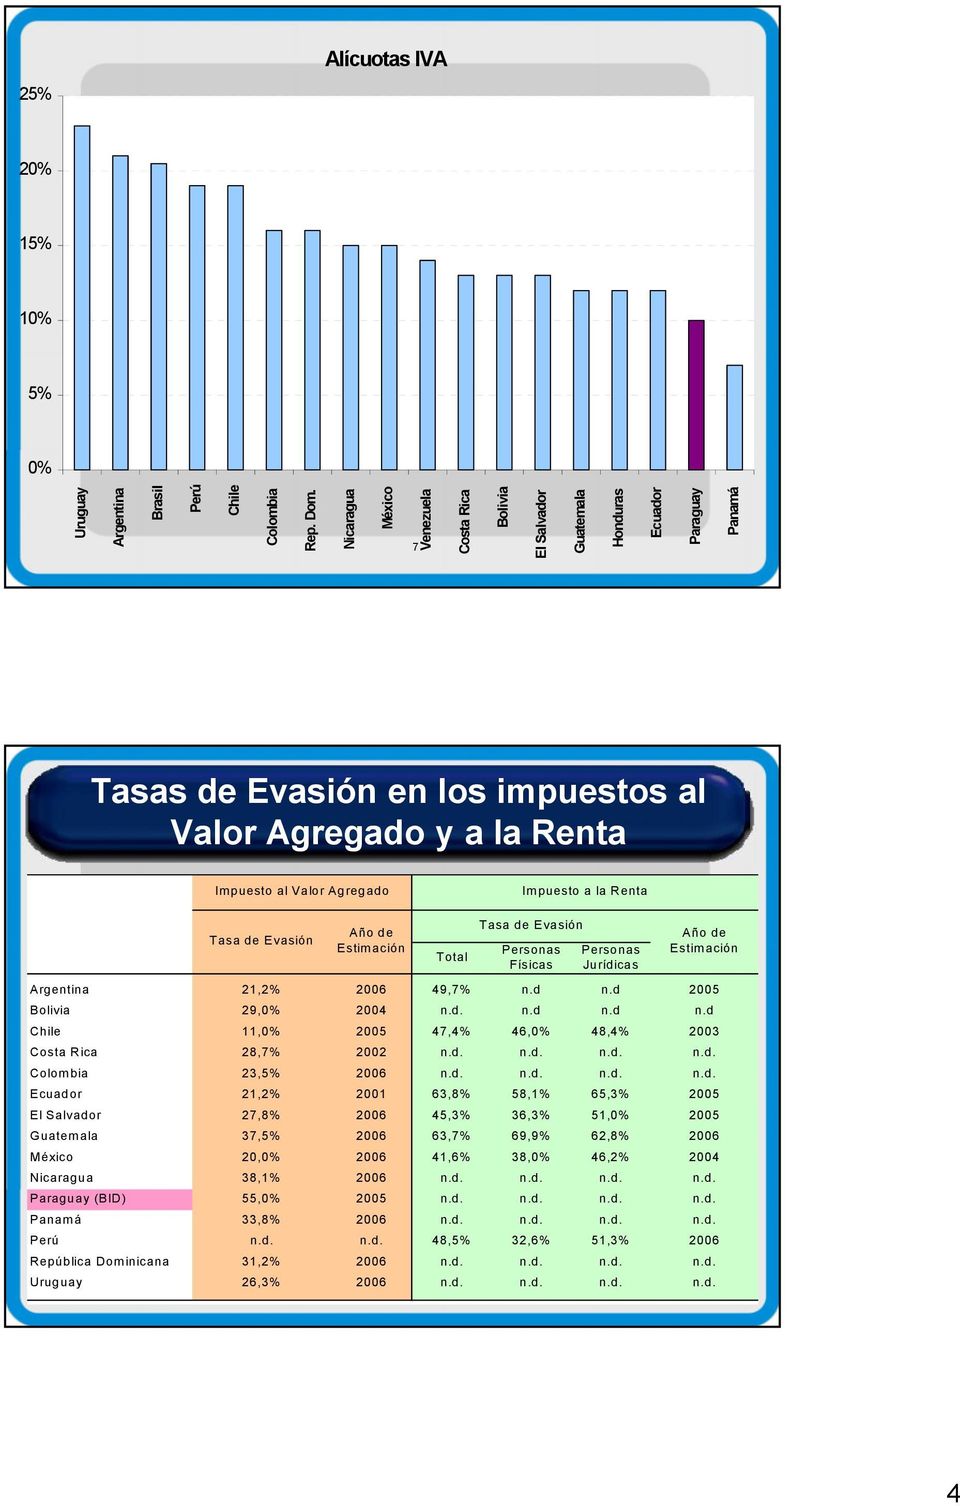 Impuesto a la Renta Tasa de Evasión Año de Estim ación Uruguay 26,3% 2006 8 n.d. n.d. n.d. n.d. Total Tasa de Evasión Personas Físicas Personas Jurídicas Año de Estim ación Argentina 21,2% 2006 49,7% n.